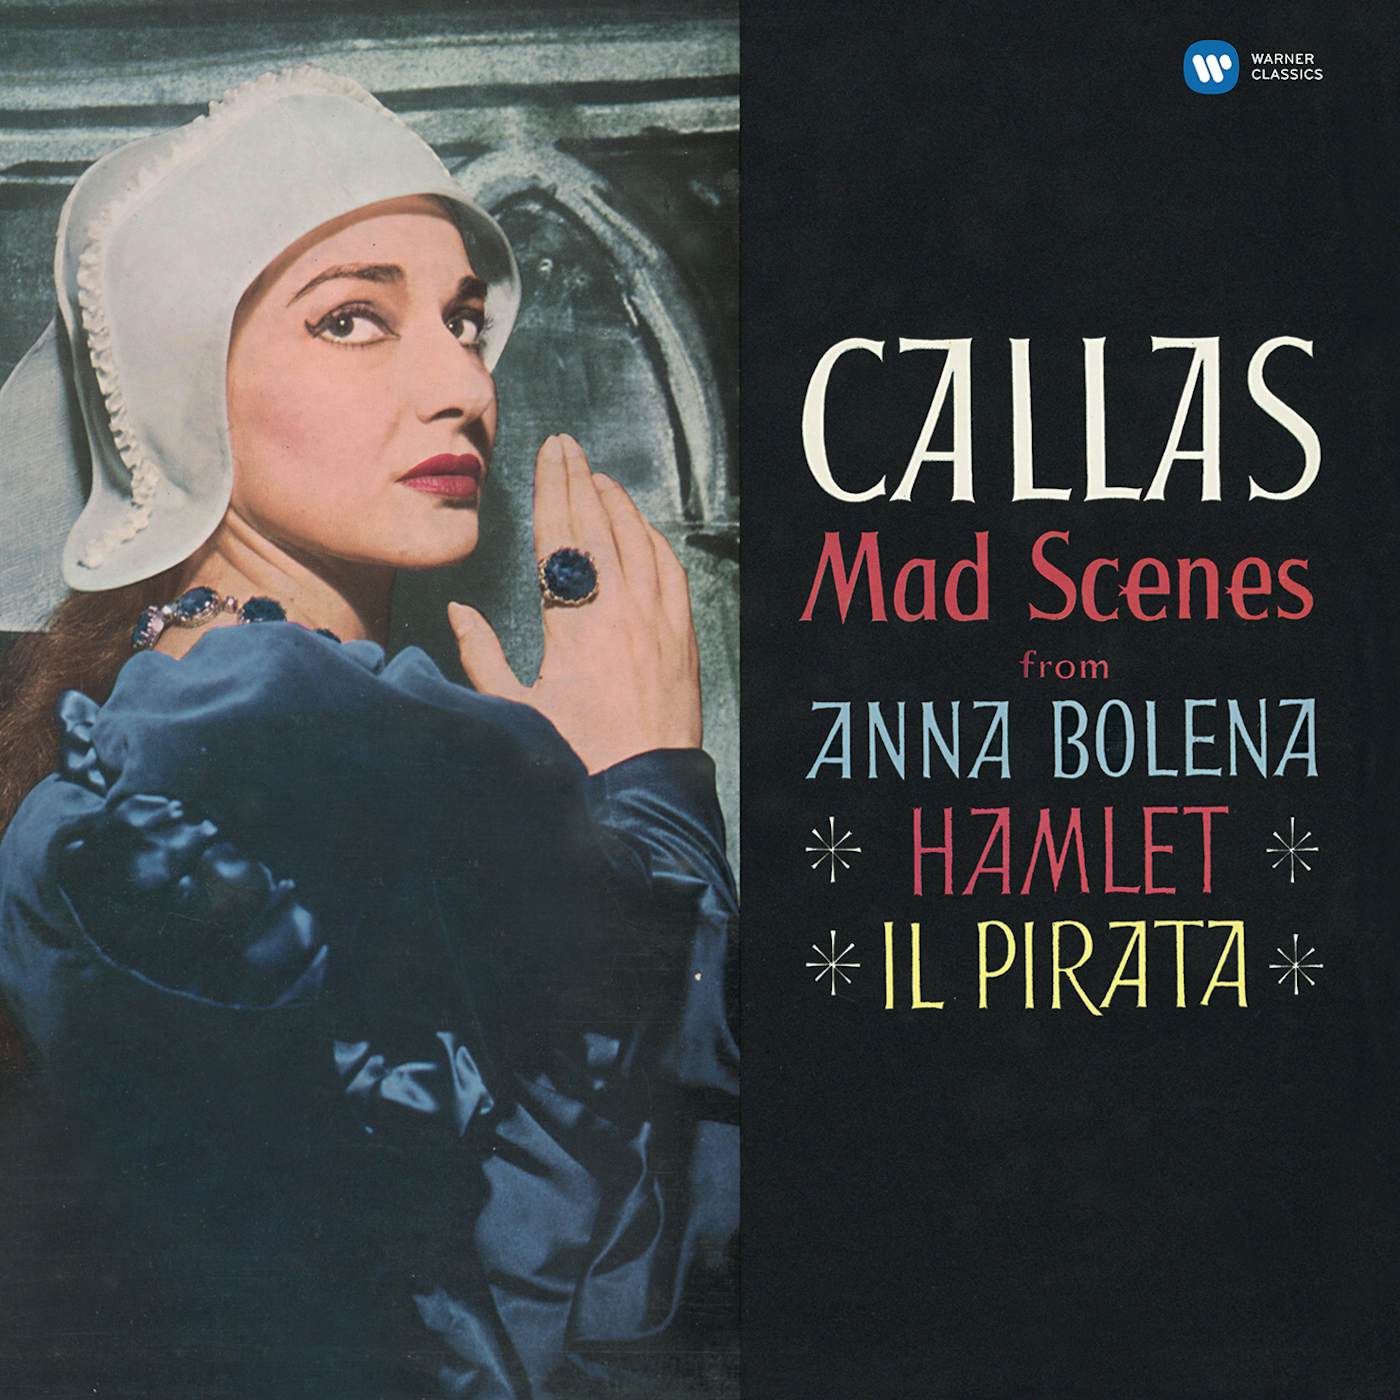 Maria Callas Mad Scenes Vinyl Record